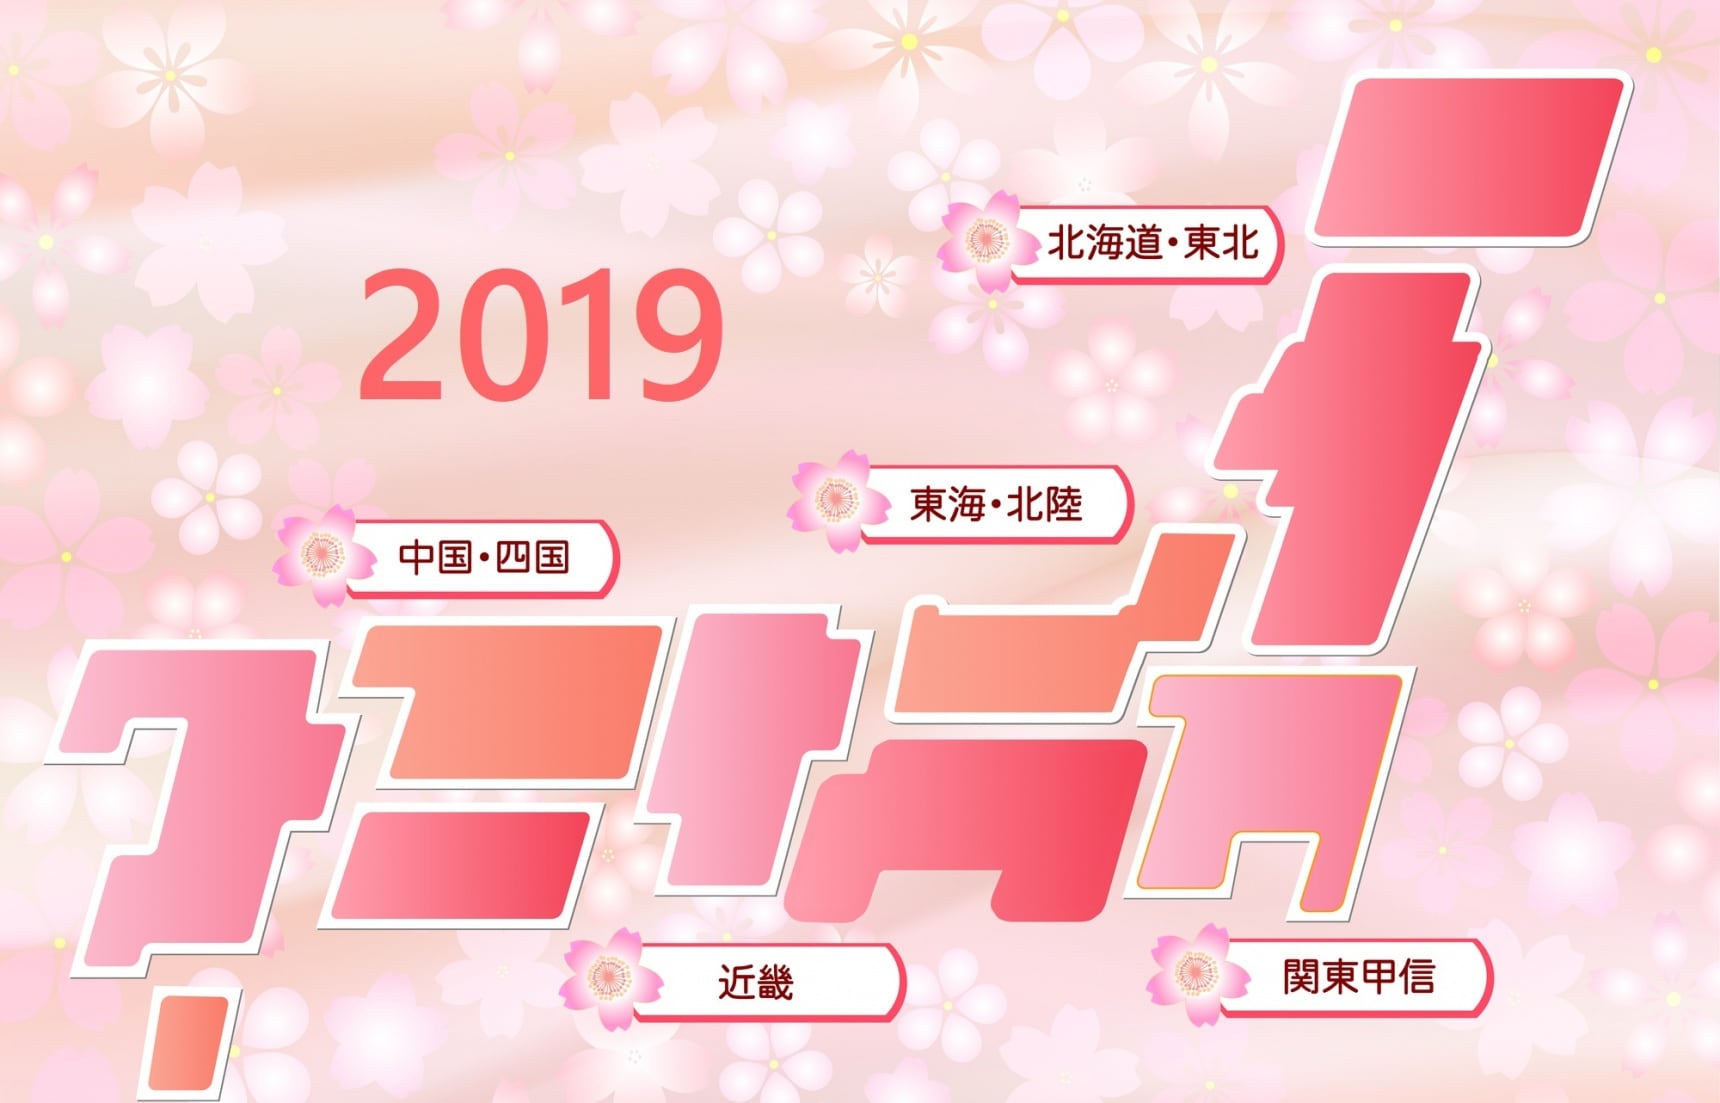 พยากรณ์ซากุระแรกของปี 2019